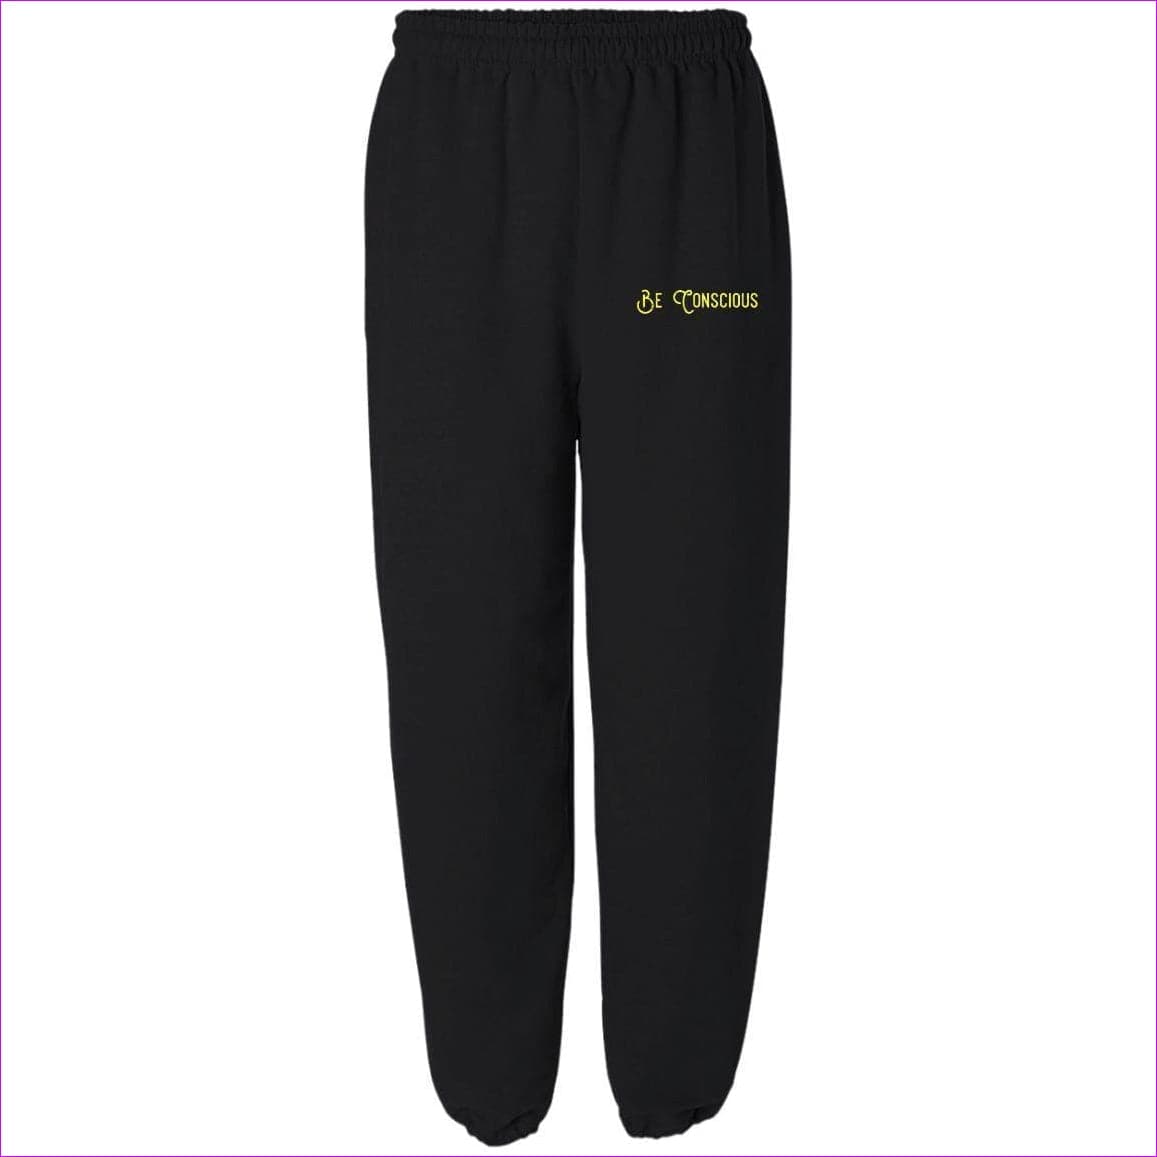 Black - Be Conscious Unisex Fleece Sweatpant without Pockets - unisex sweatpants at TFC&H Co.